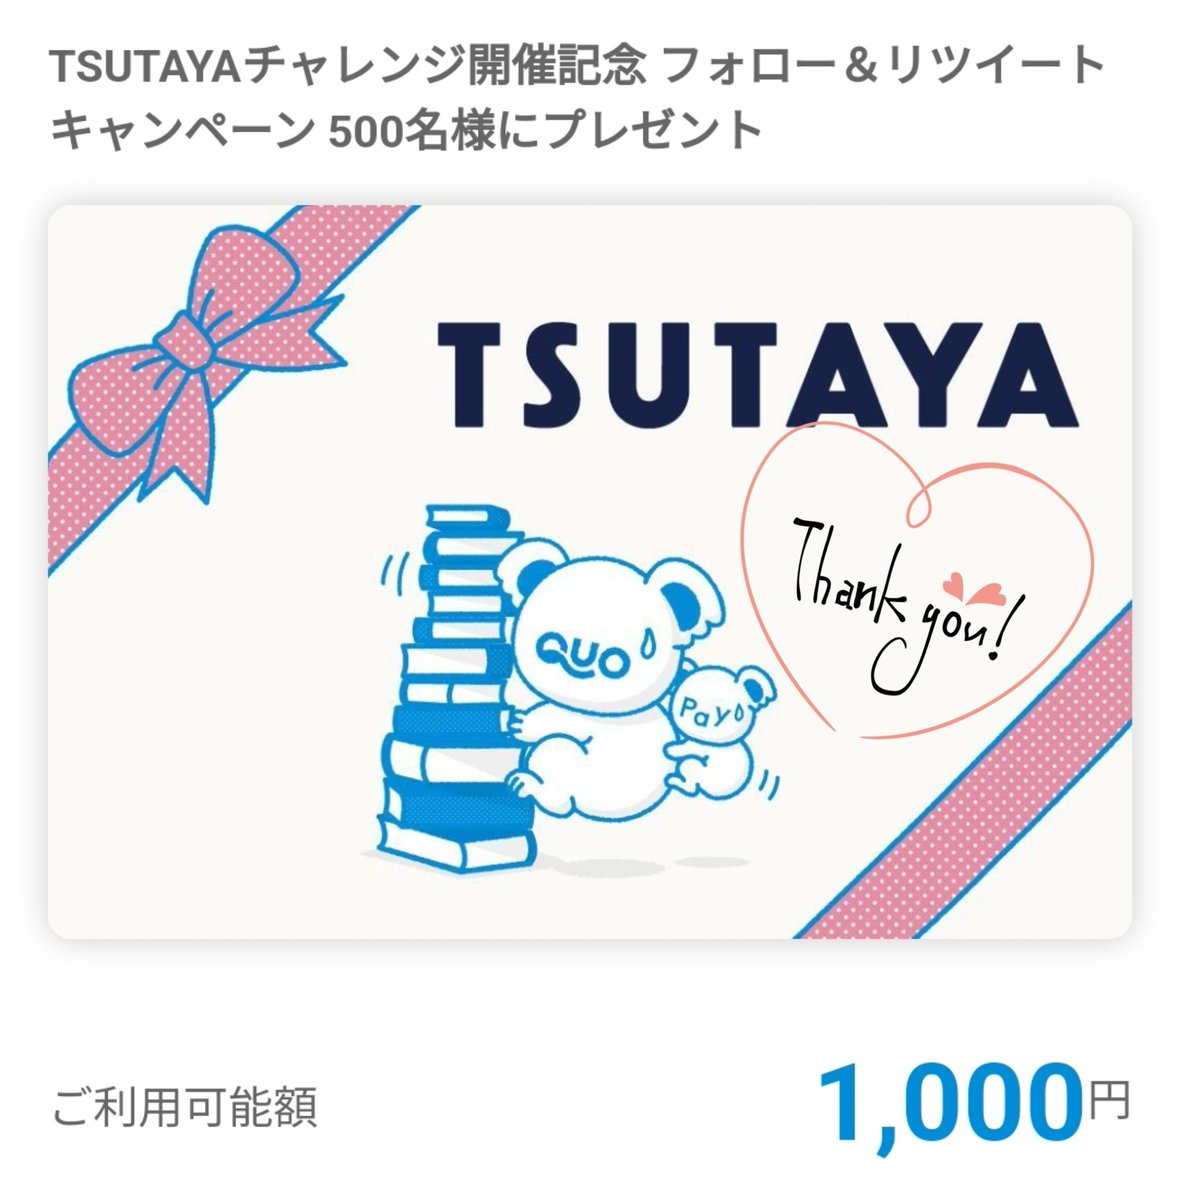 TSUTAYA 様　

TSUTAYAチャレンジにて
その場でQUOカードPayいだだきました🙌💕
とっても嬉しいです ⸝⋆
ありがとうございます(* ॑꒳ ॑* )

@shop_TSUTAYA 
#当選報告